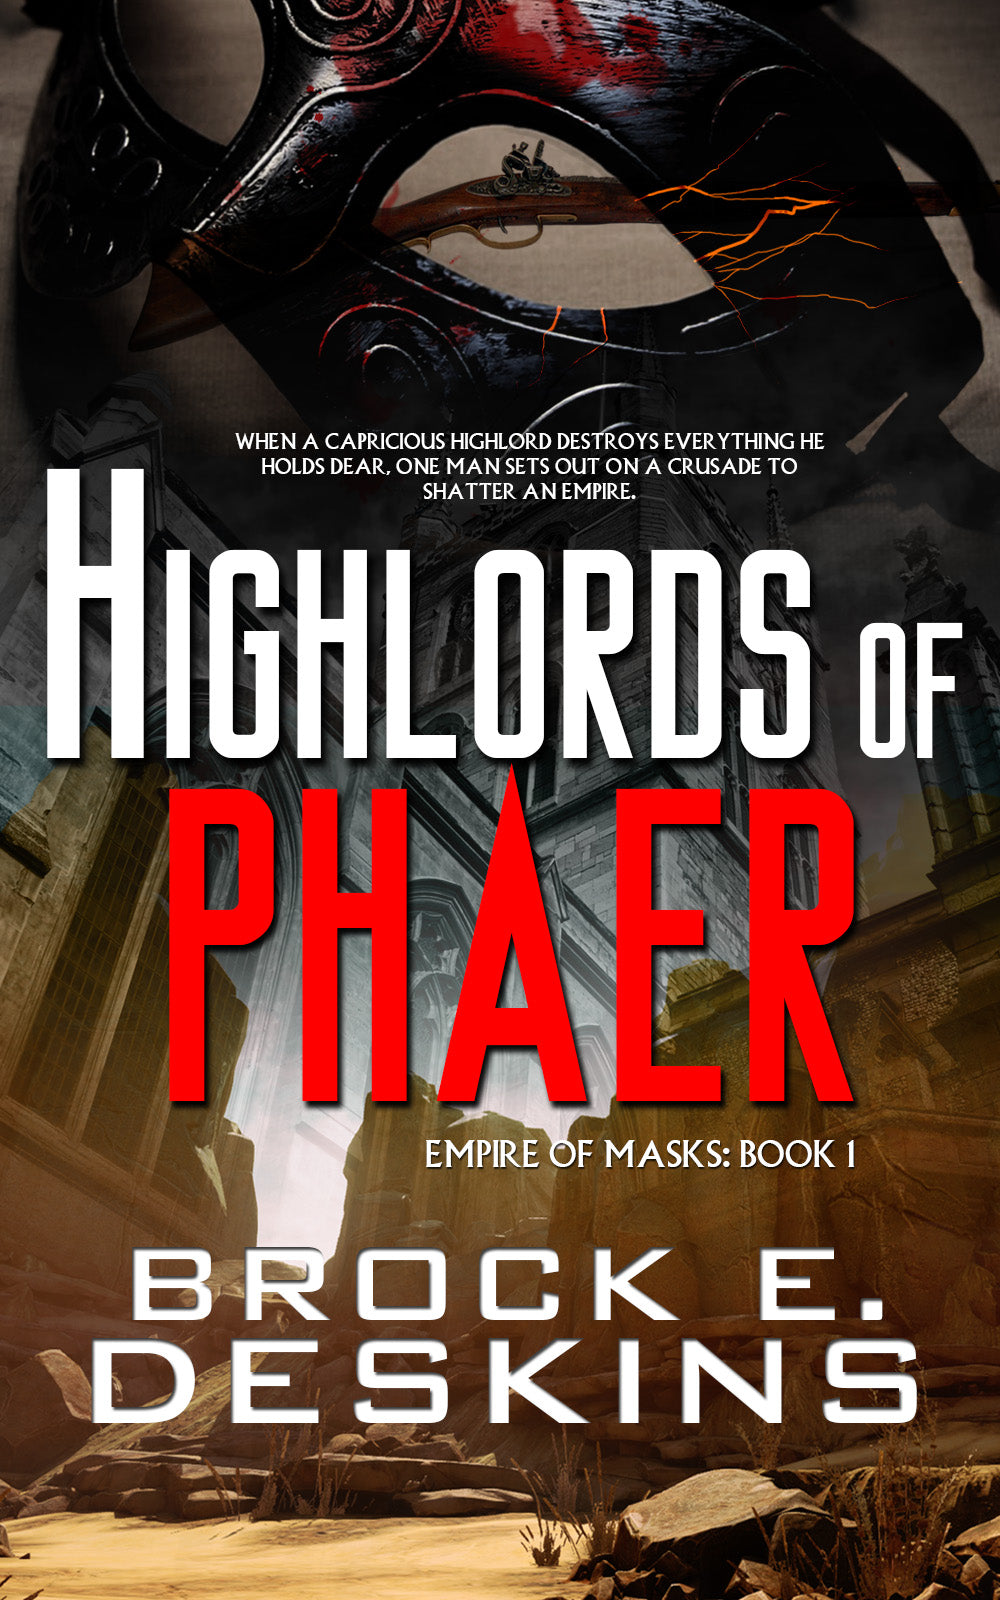 Book Review: Highlords of Phaer by Brock Deskins